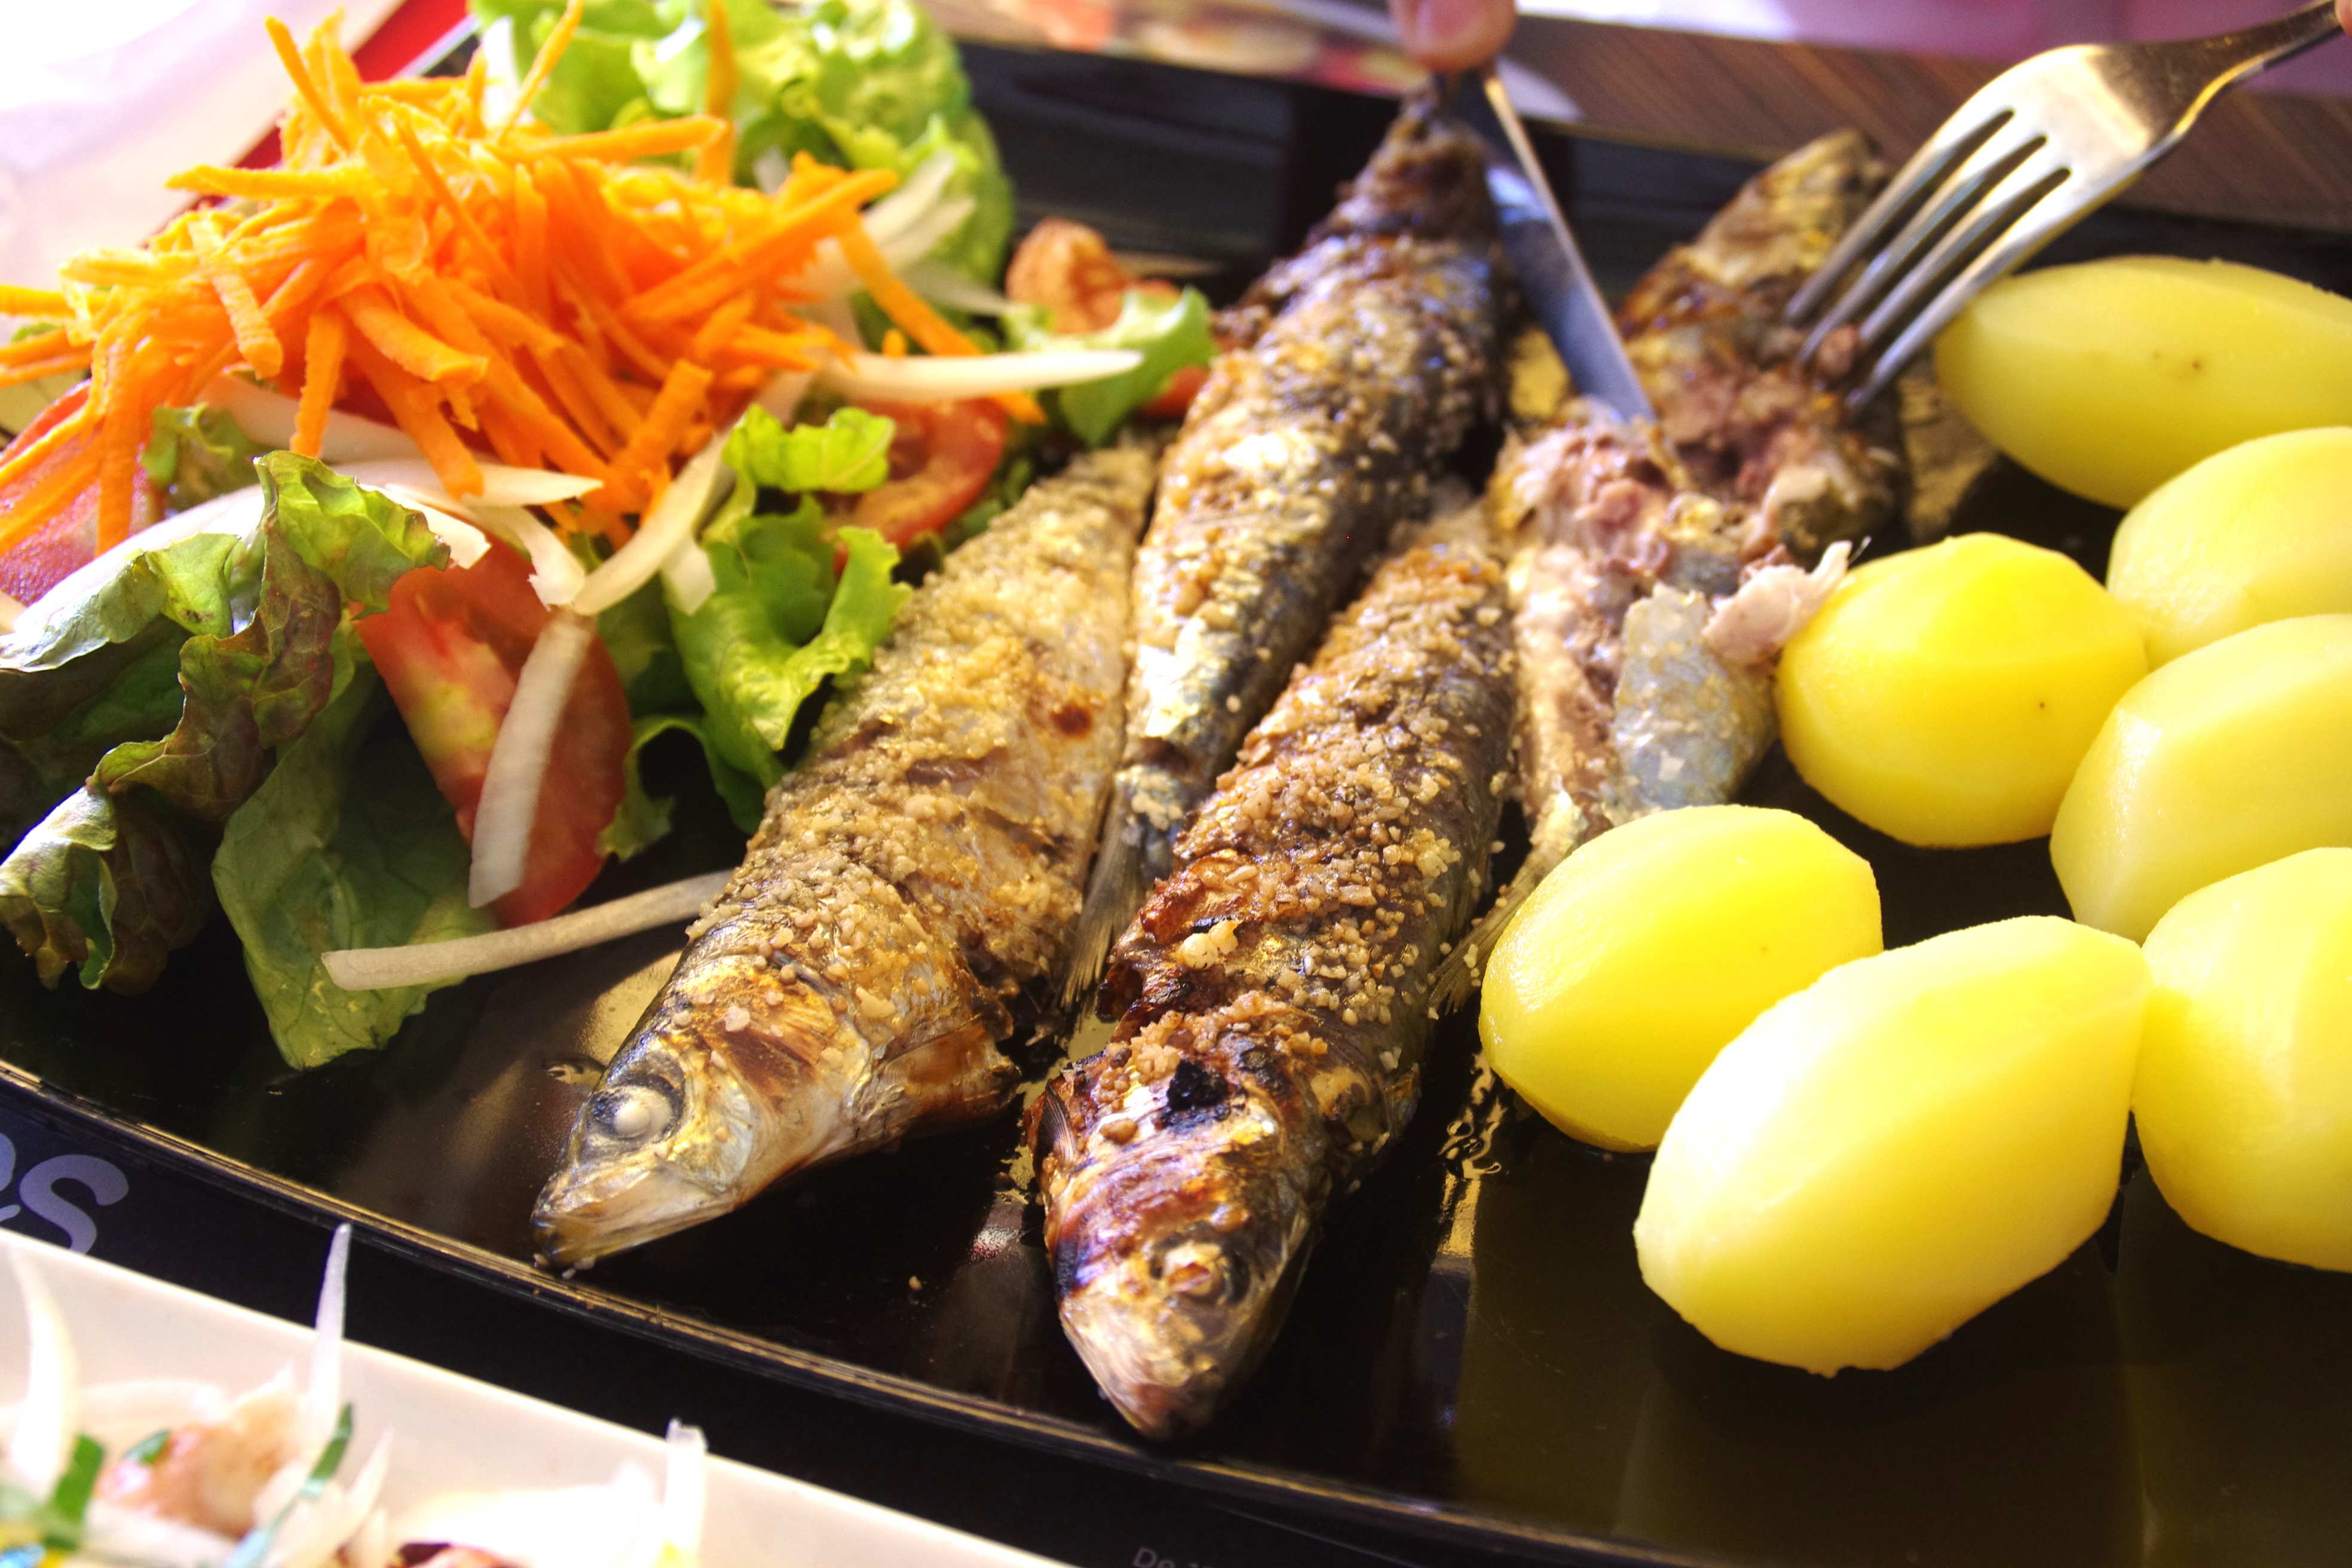 ポルトガルで焼き魚 おいしすぎるナザレの名物料理を食す Tomoko Taketani Transit Lounge